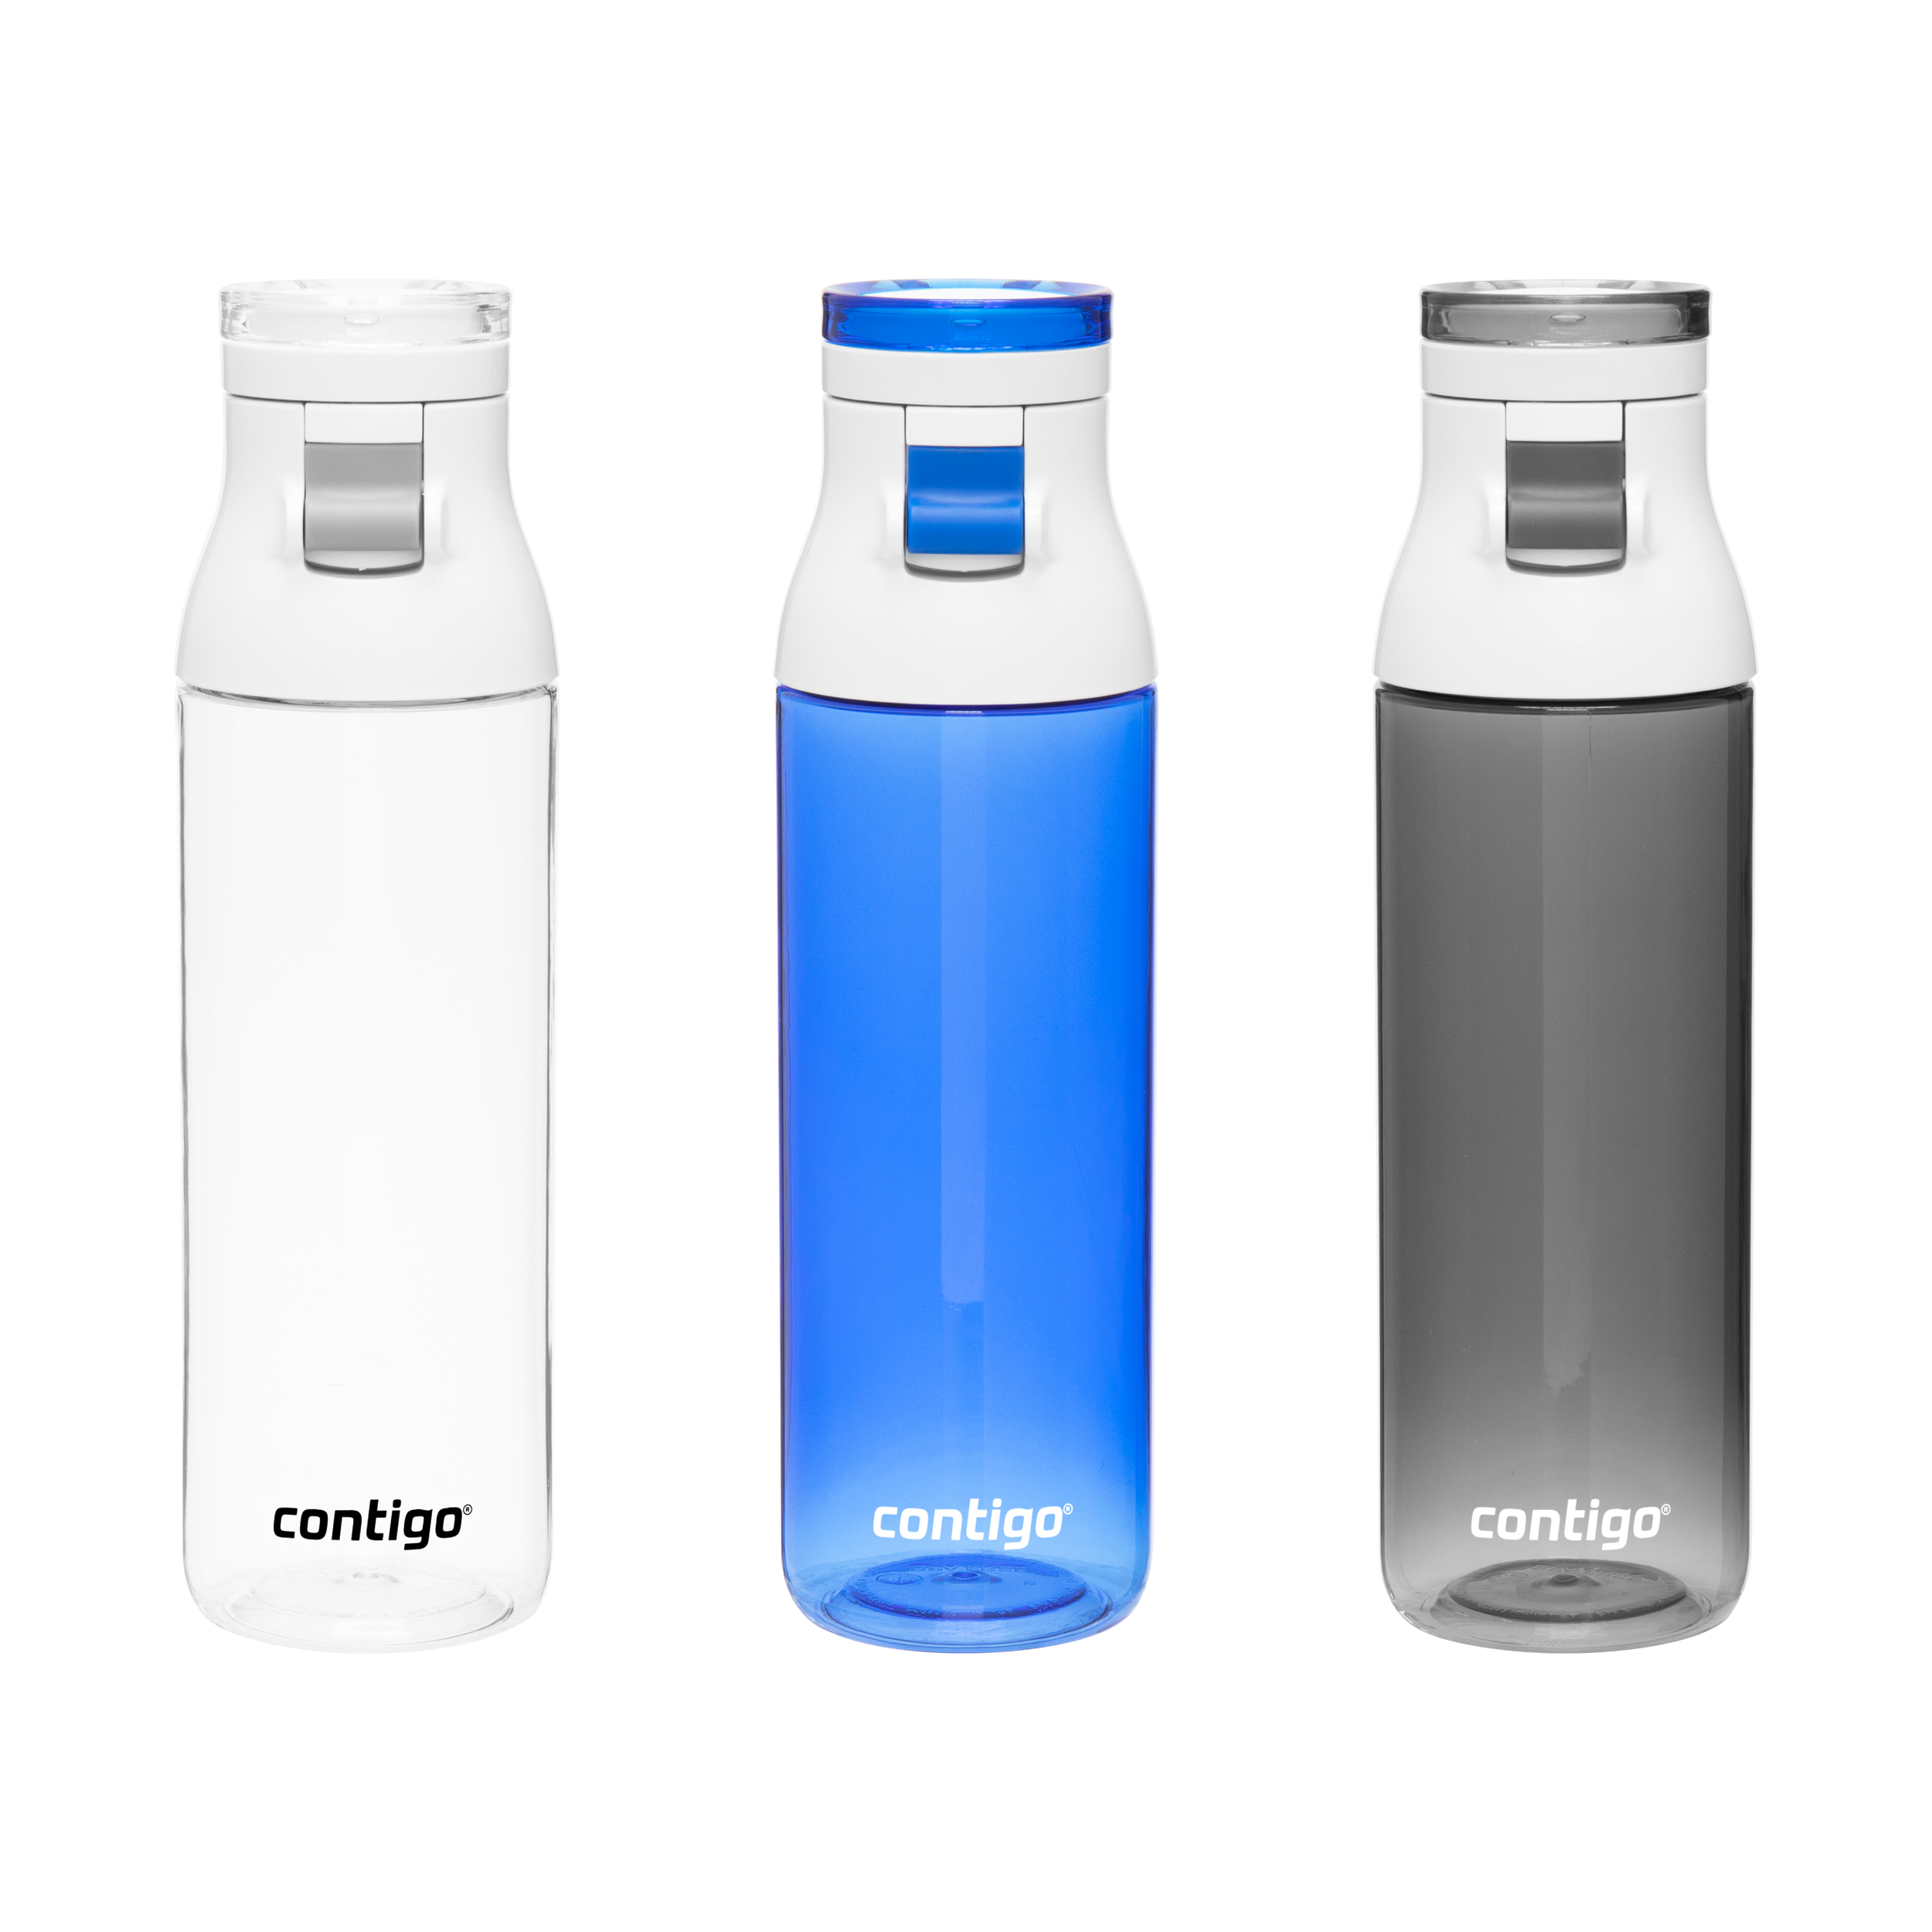 Contigo Chug 24 oz single wall water bottle